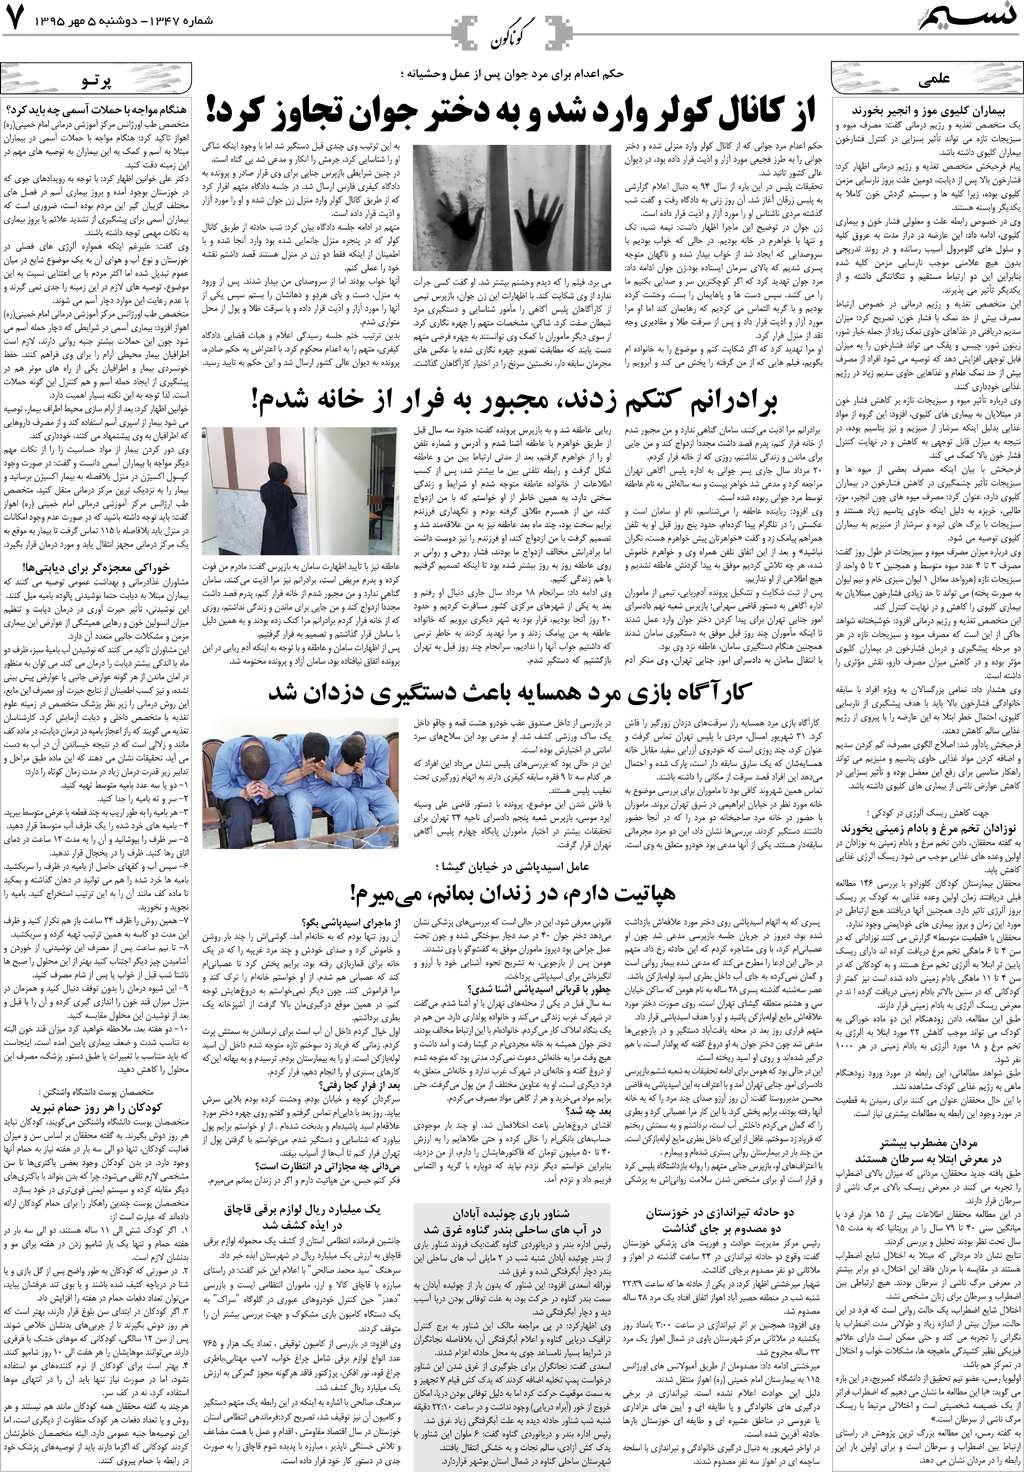 صفحه گوناگون روزنامه نسیم شماره 1347